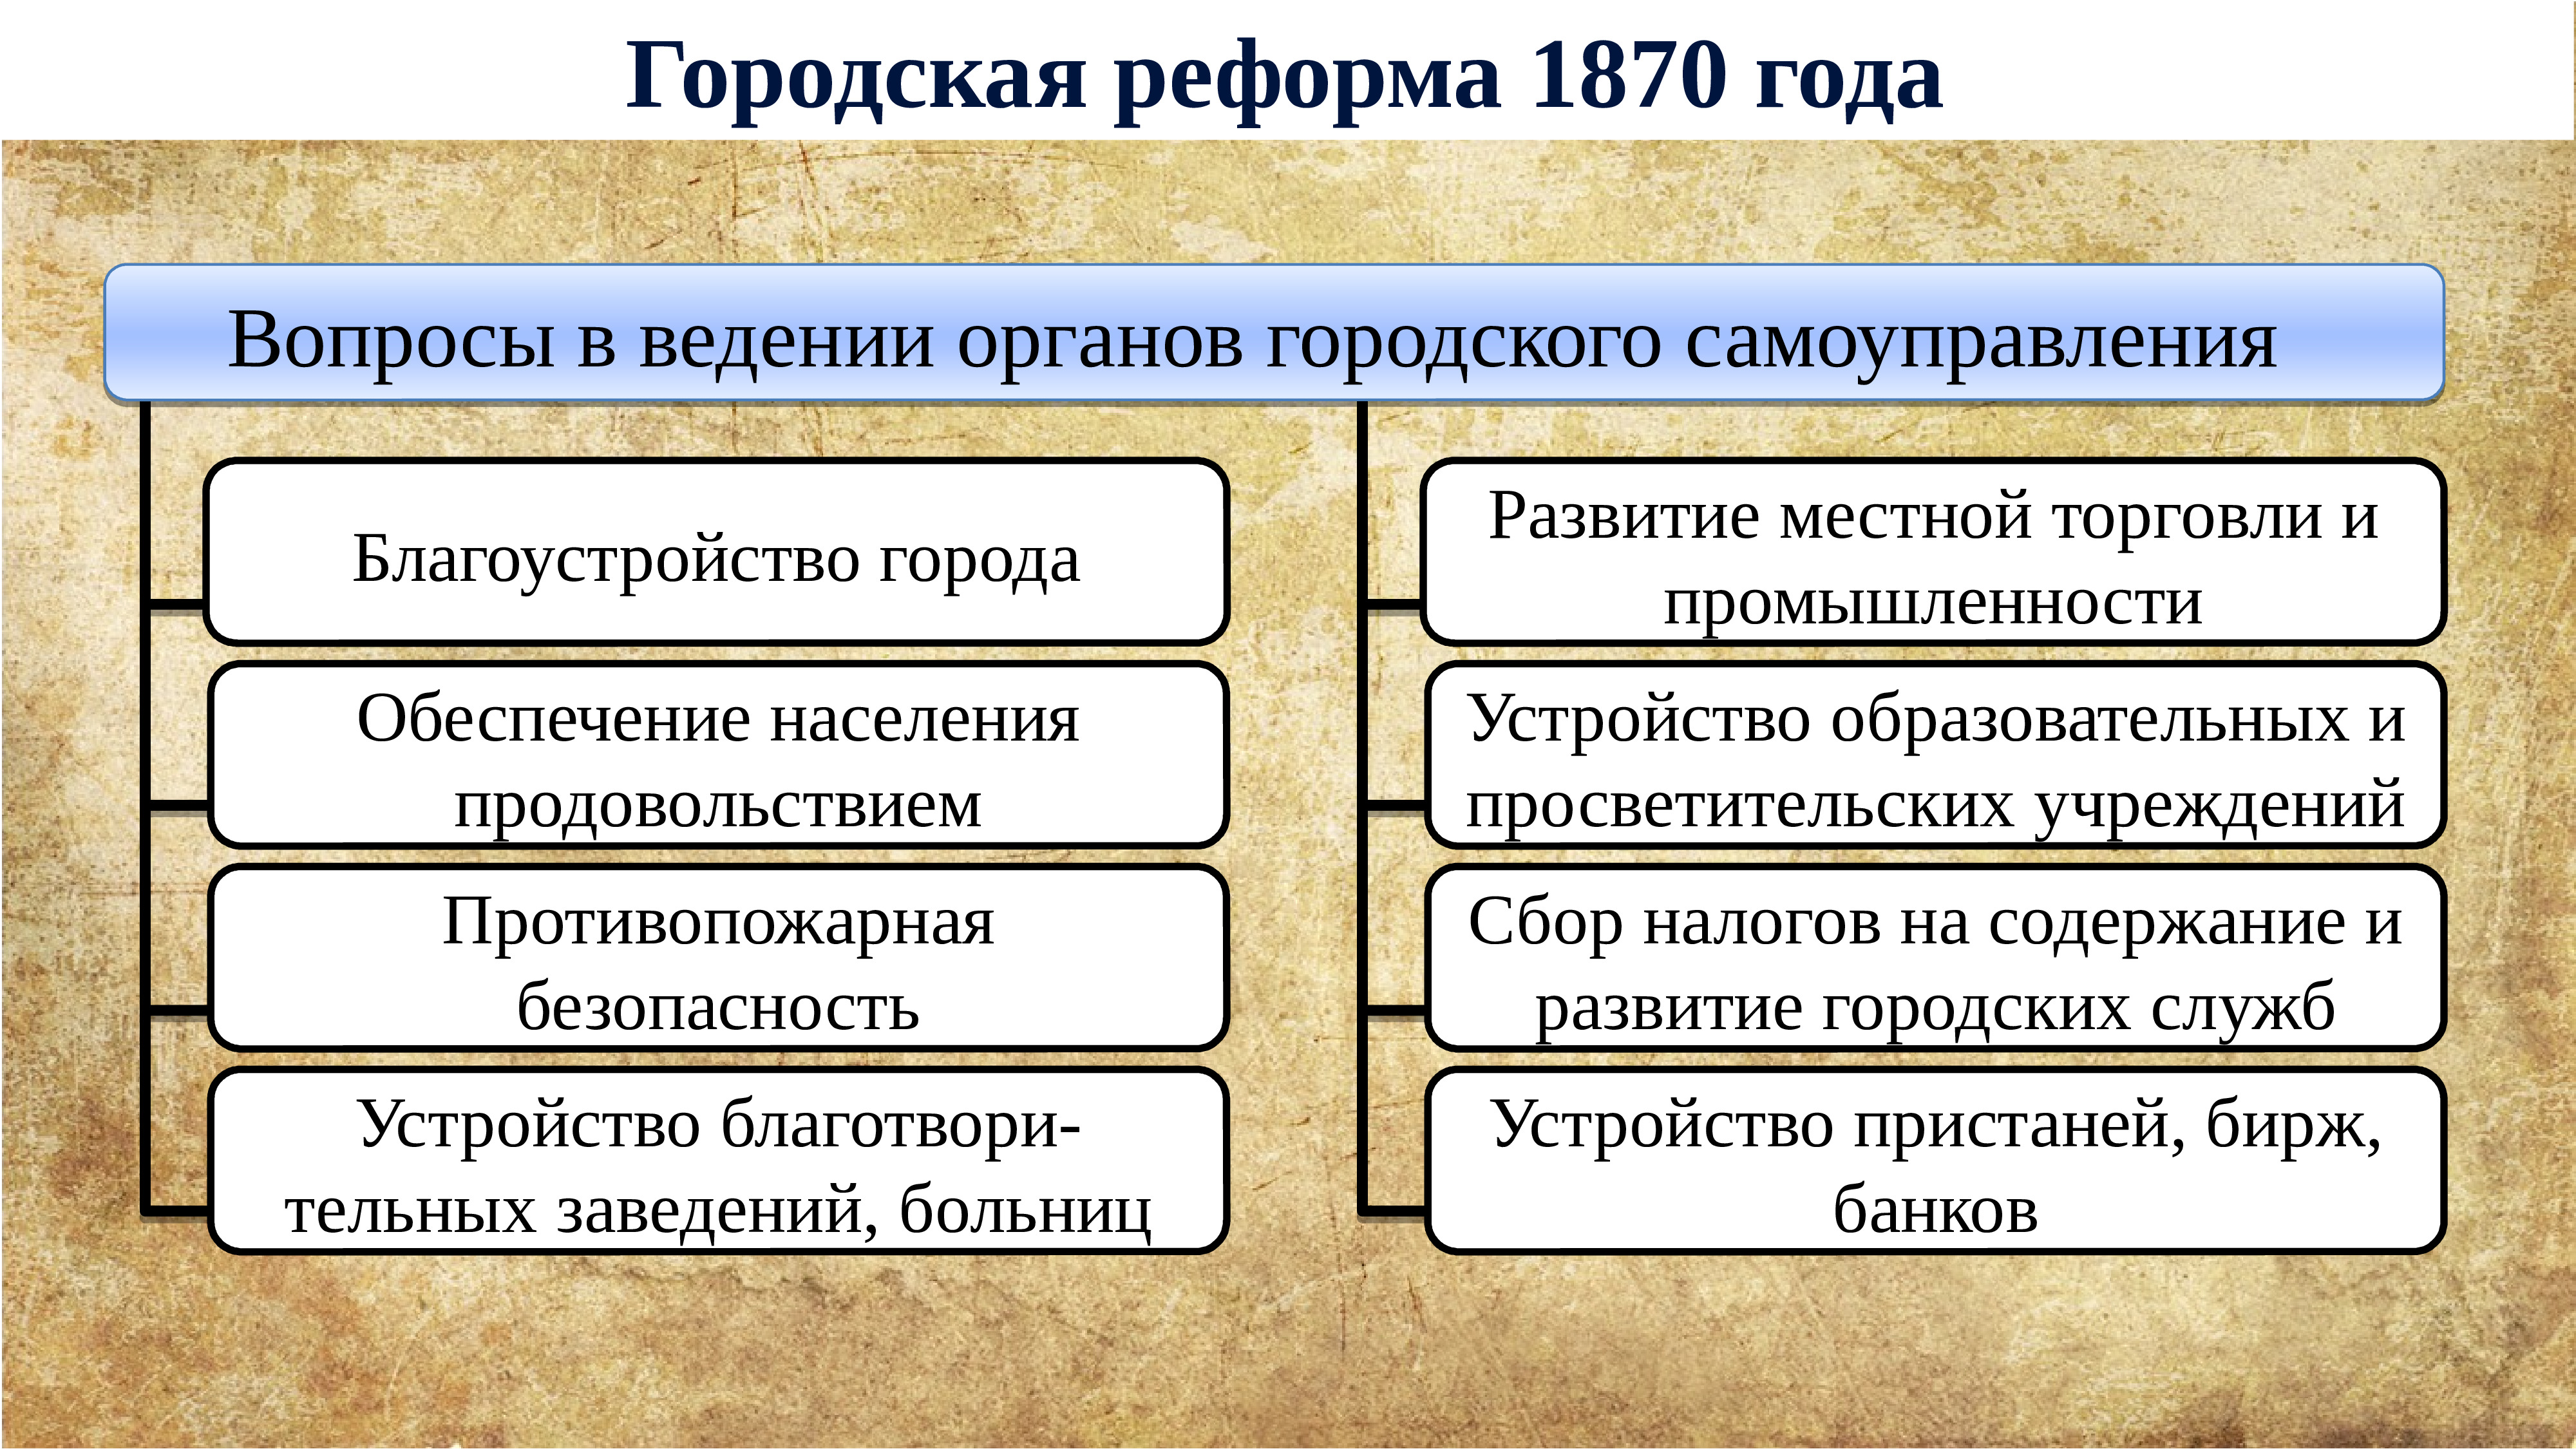 Ограничение срока обязательной дворянской. Губернская реформа 1860-1870. Внутренняя политика Екатерины 2.